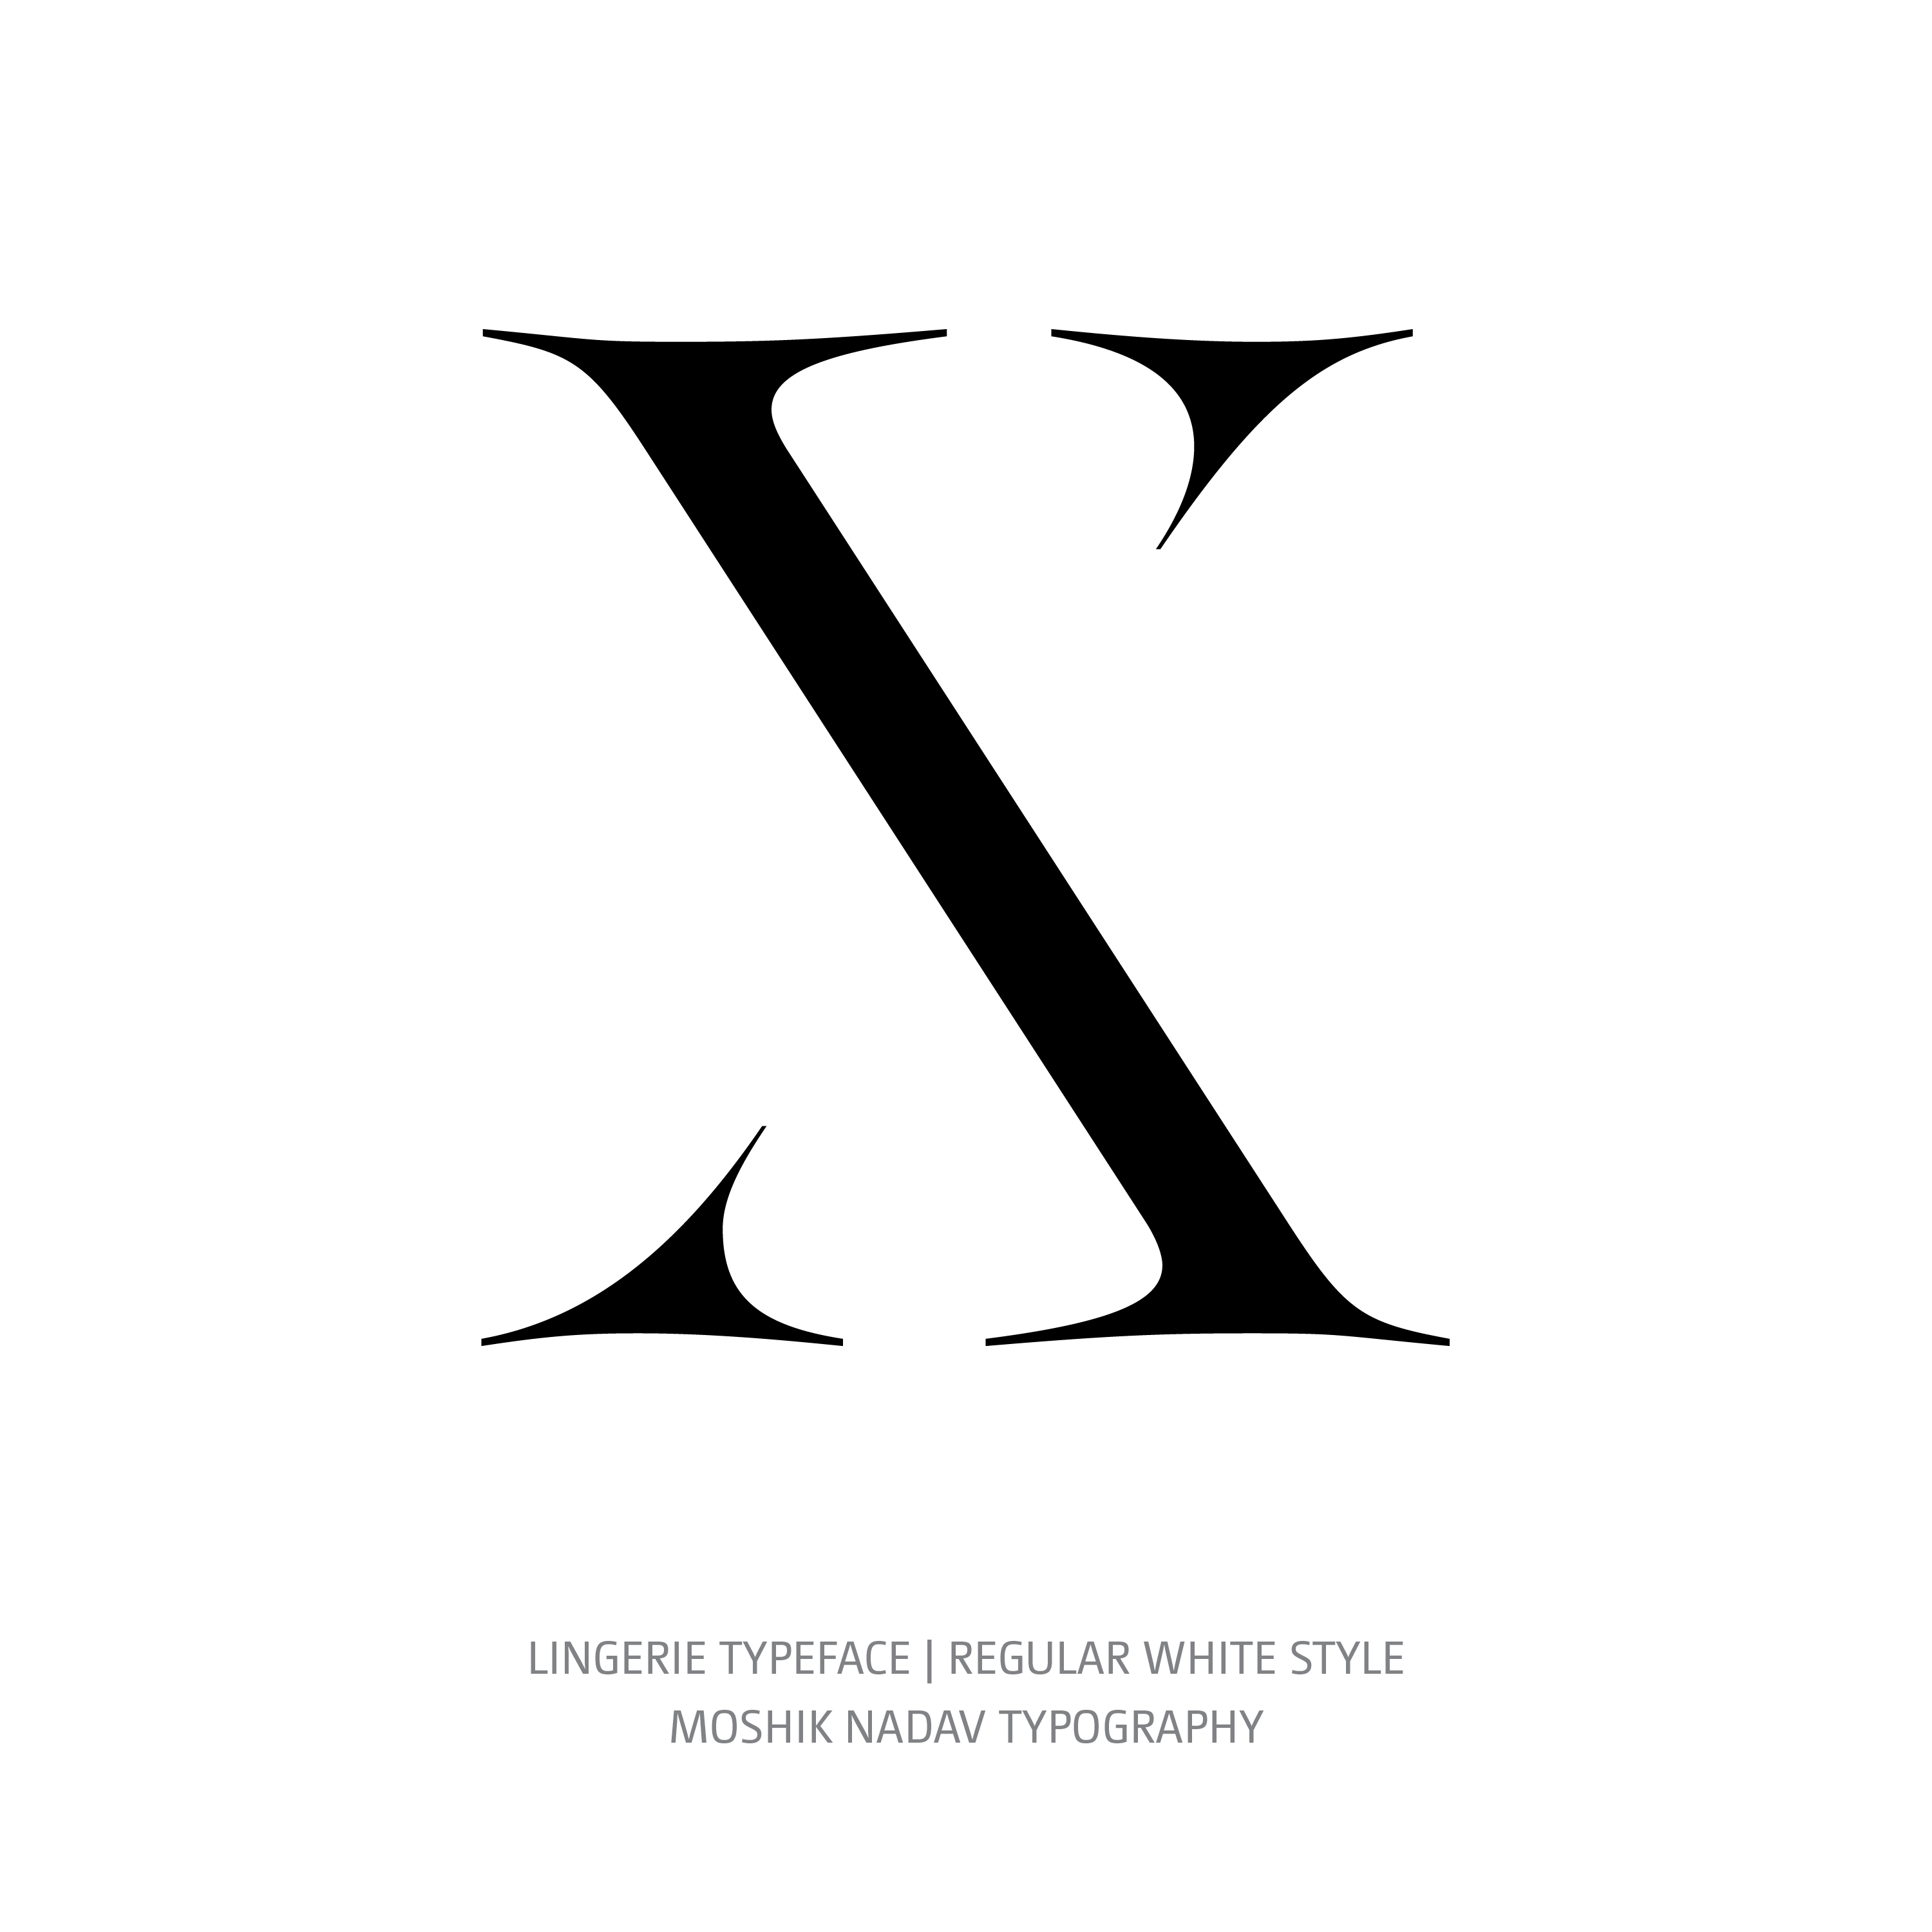 Lingerie Typeface Regular White X